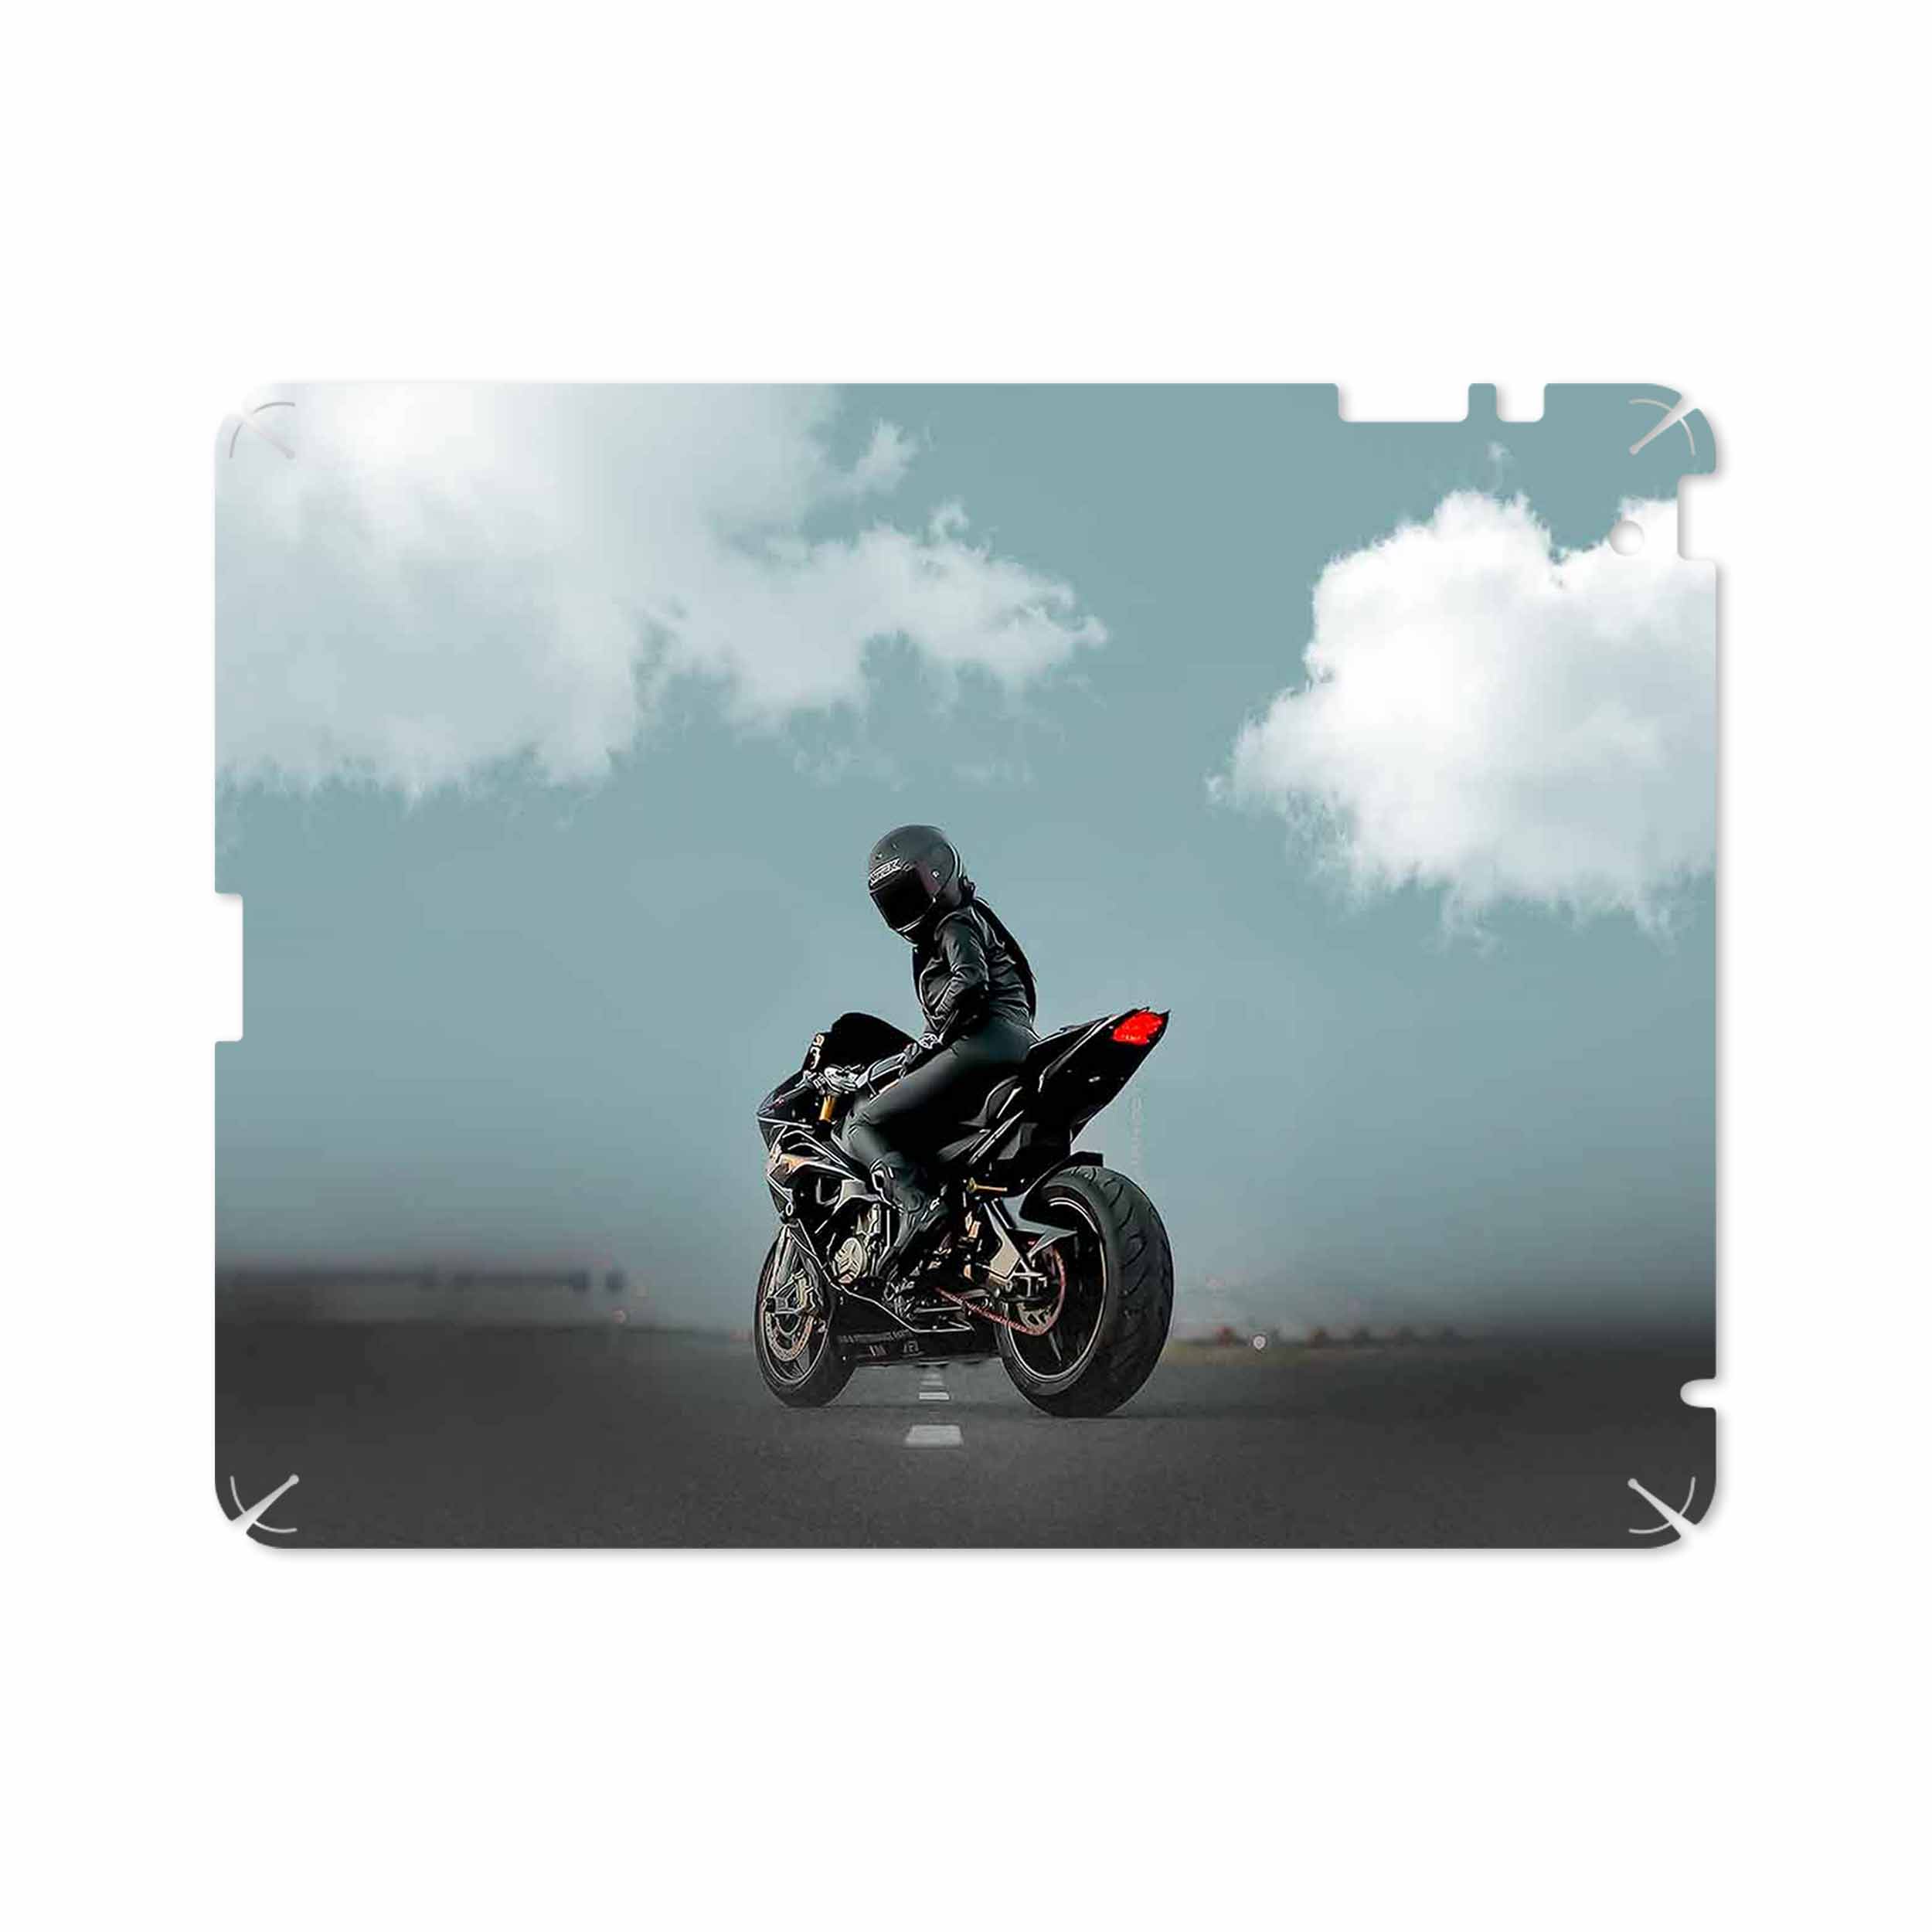 برچسب پوششی ماهوت مدل Motorcycling مناسب برای تبلت اپل iPad 2 2011 A1396